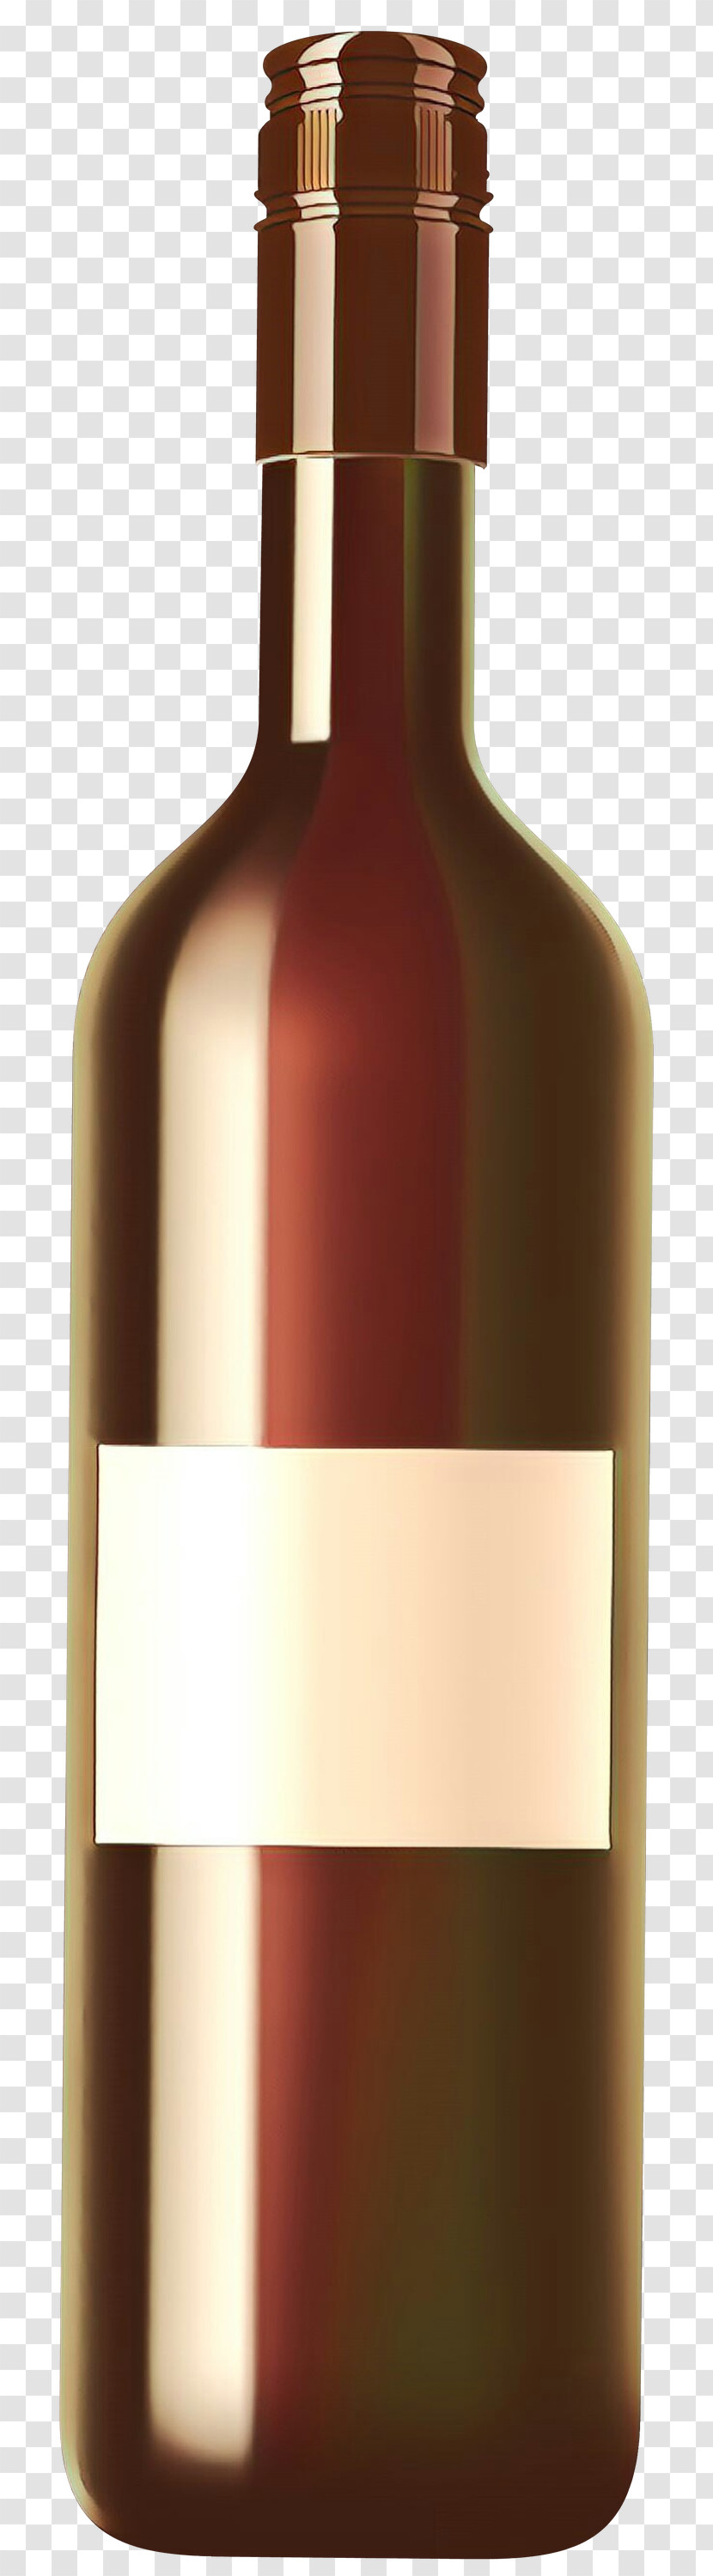 Bottle Wine Bottle Liqueur Glass Bottle Drink Transparent PNG